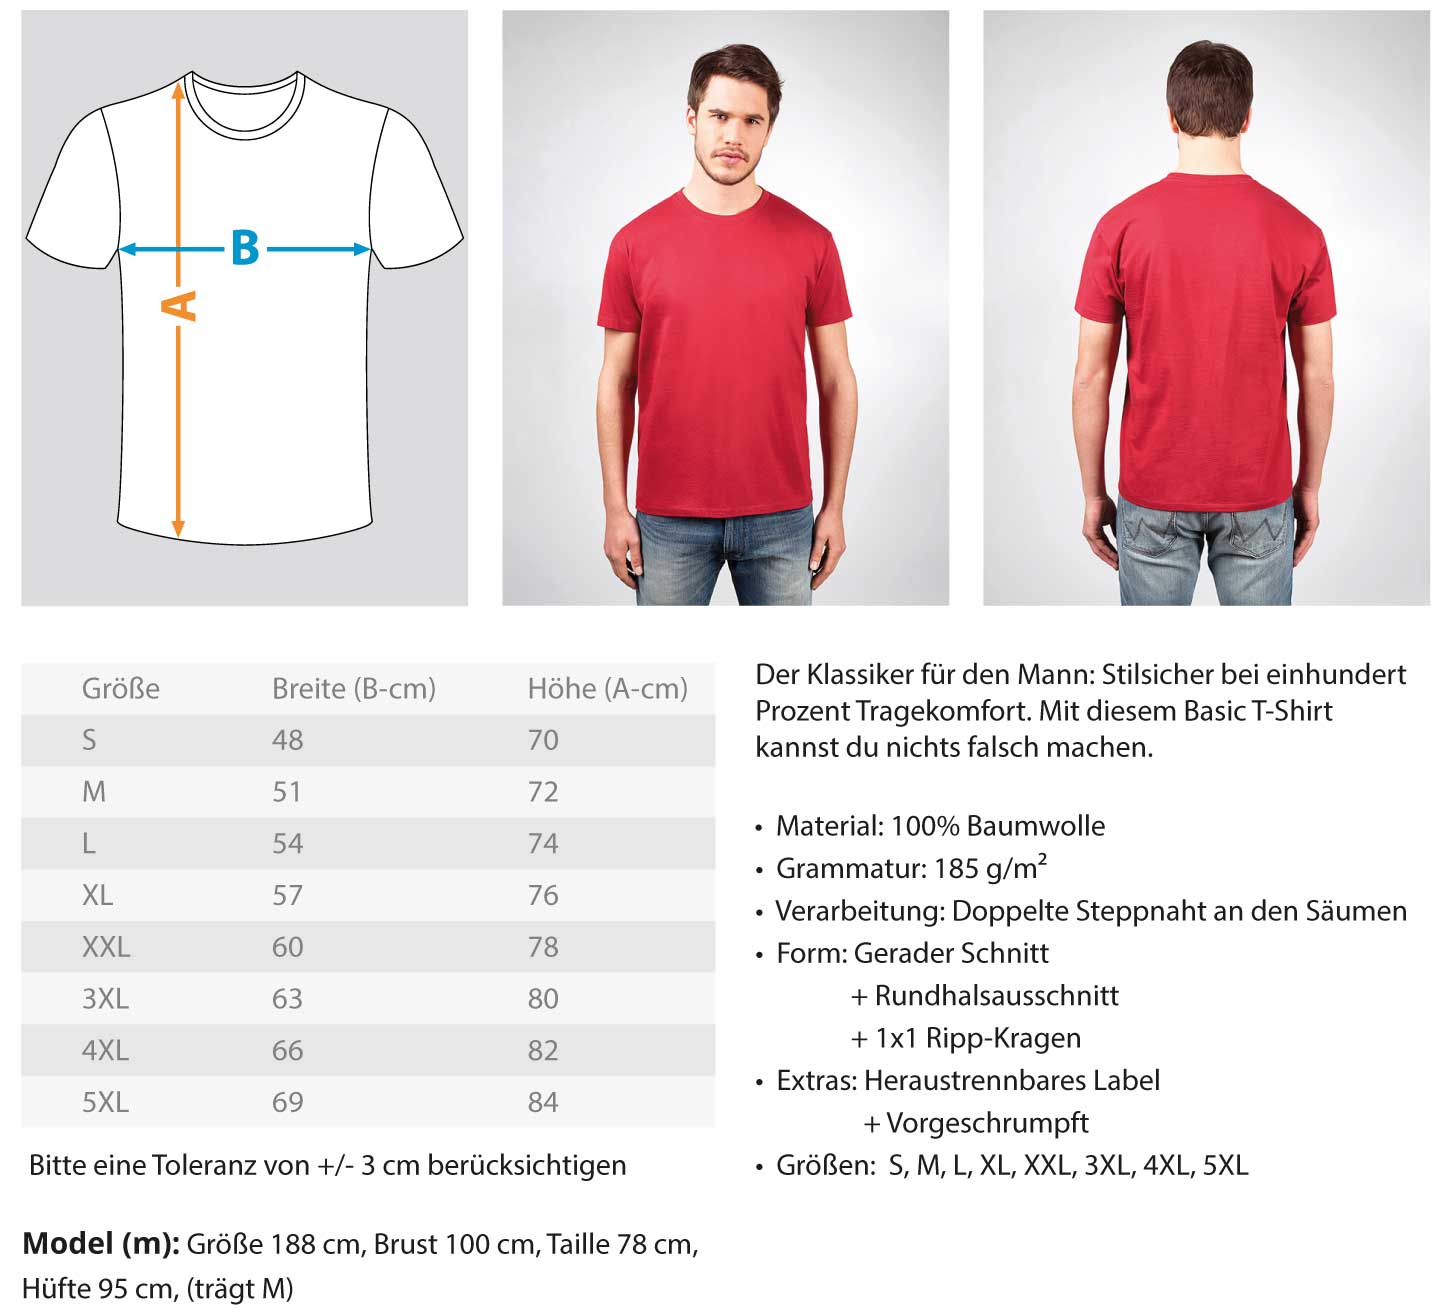 Mechaniker Stundenlohn · Herren T-Shirt-Herren Basic T-Shirt-Agrarstarz